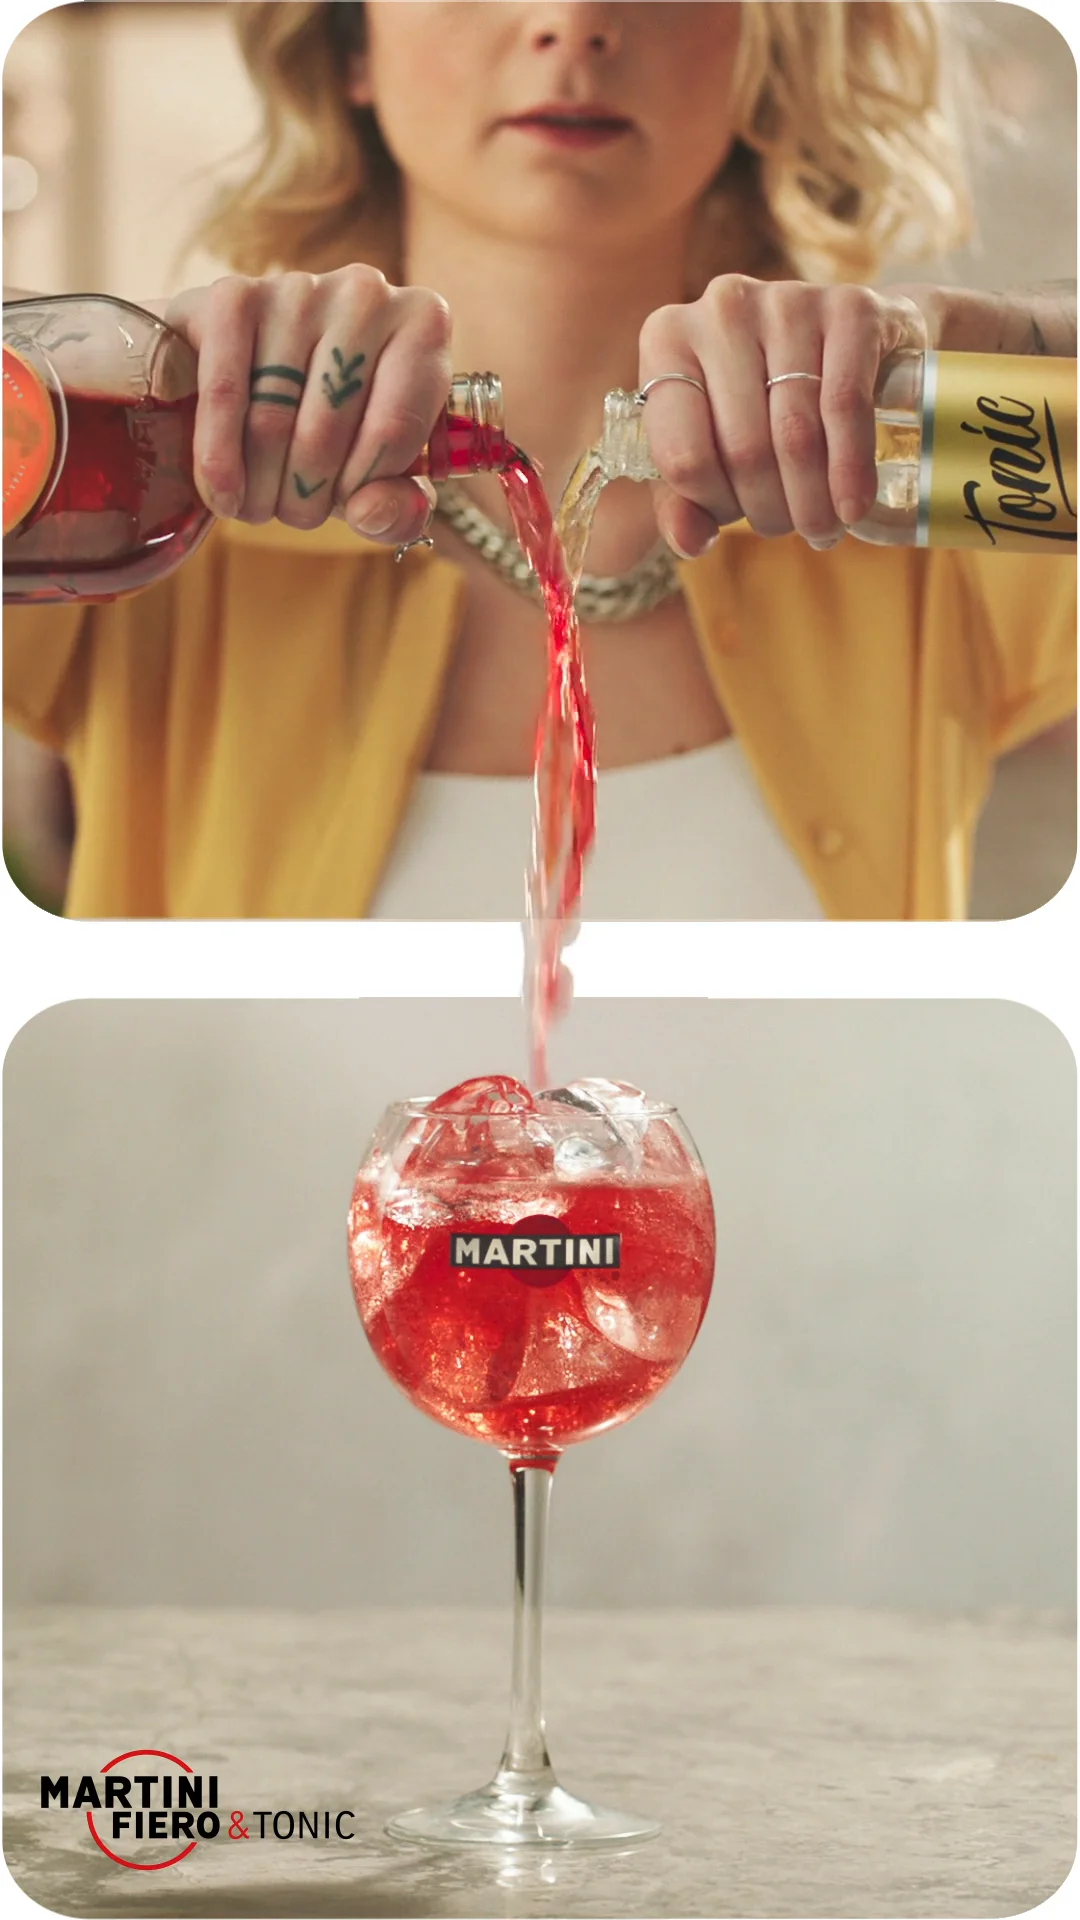 Martini Fiero - Pinterest 'Pour' on Vimeo